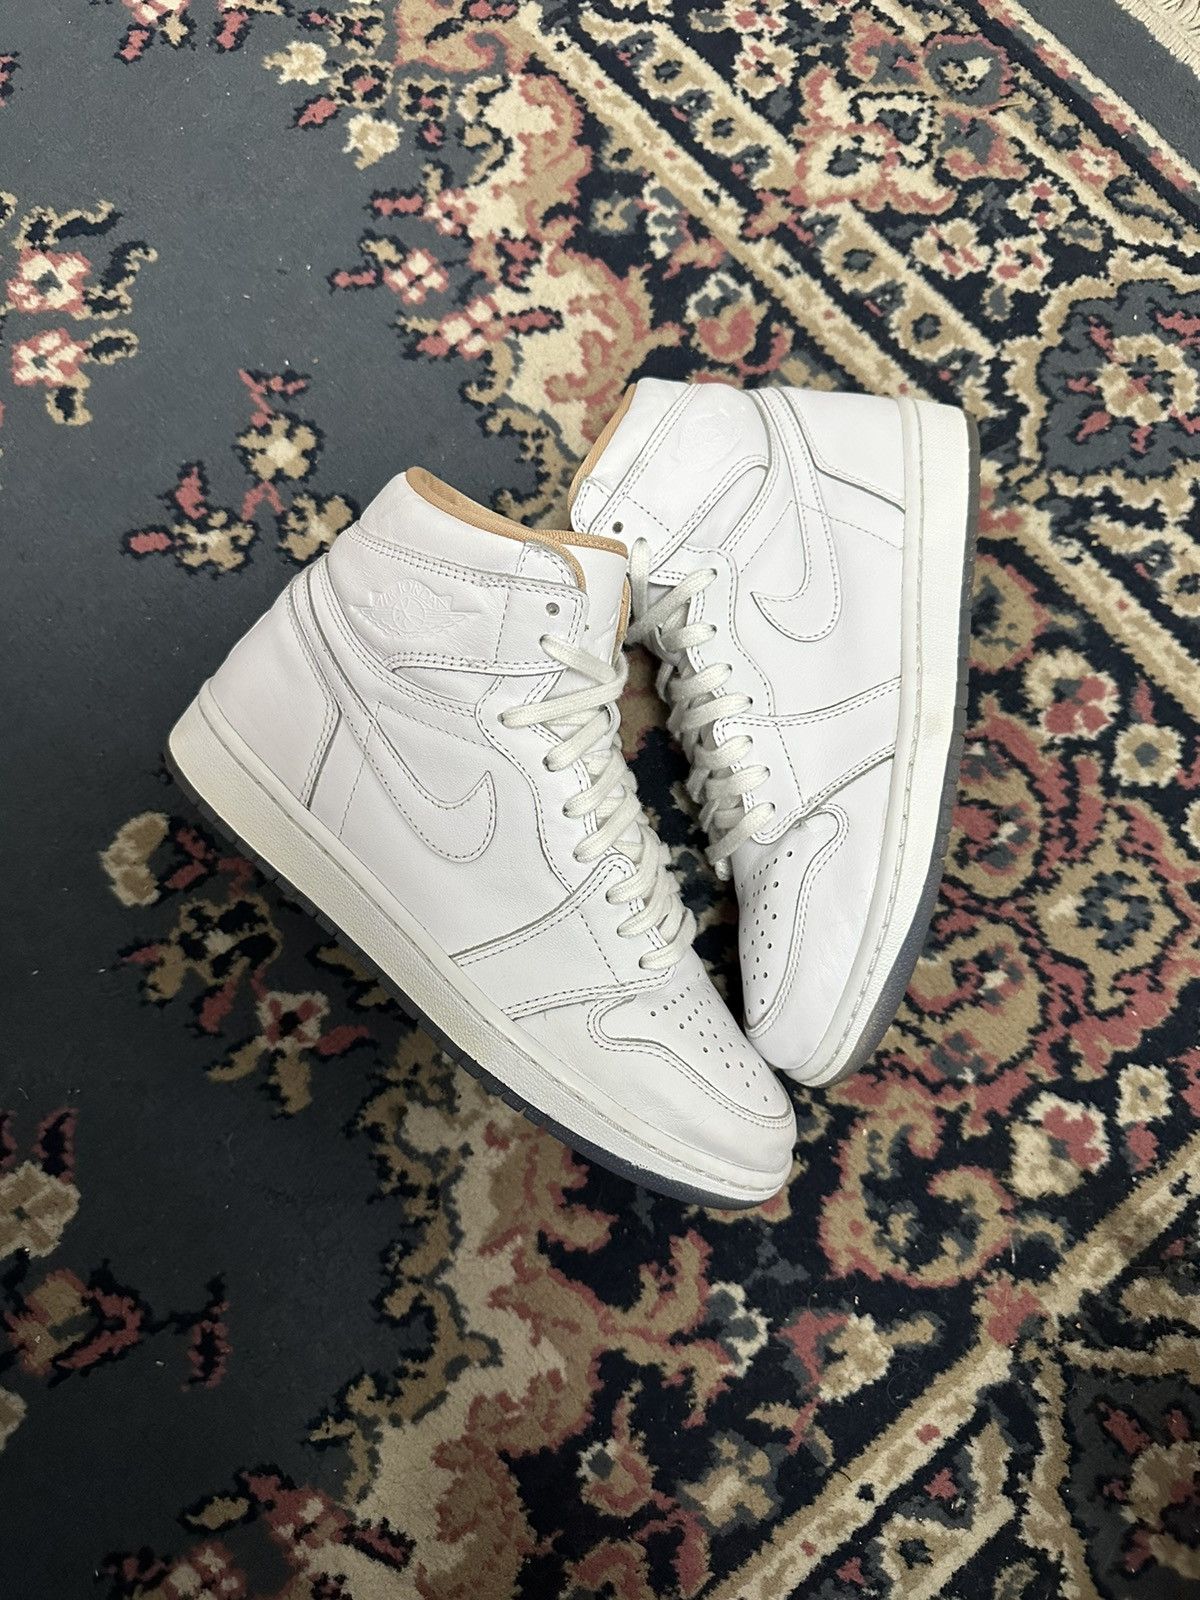 Pre-owned Jordan Nike Jordan 1 Retro High Og Los Angeles 2015 Size 8.5 Shoes In White